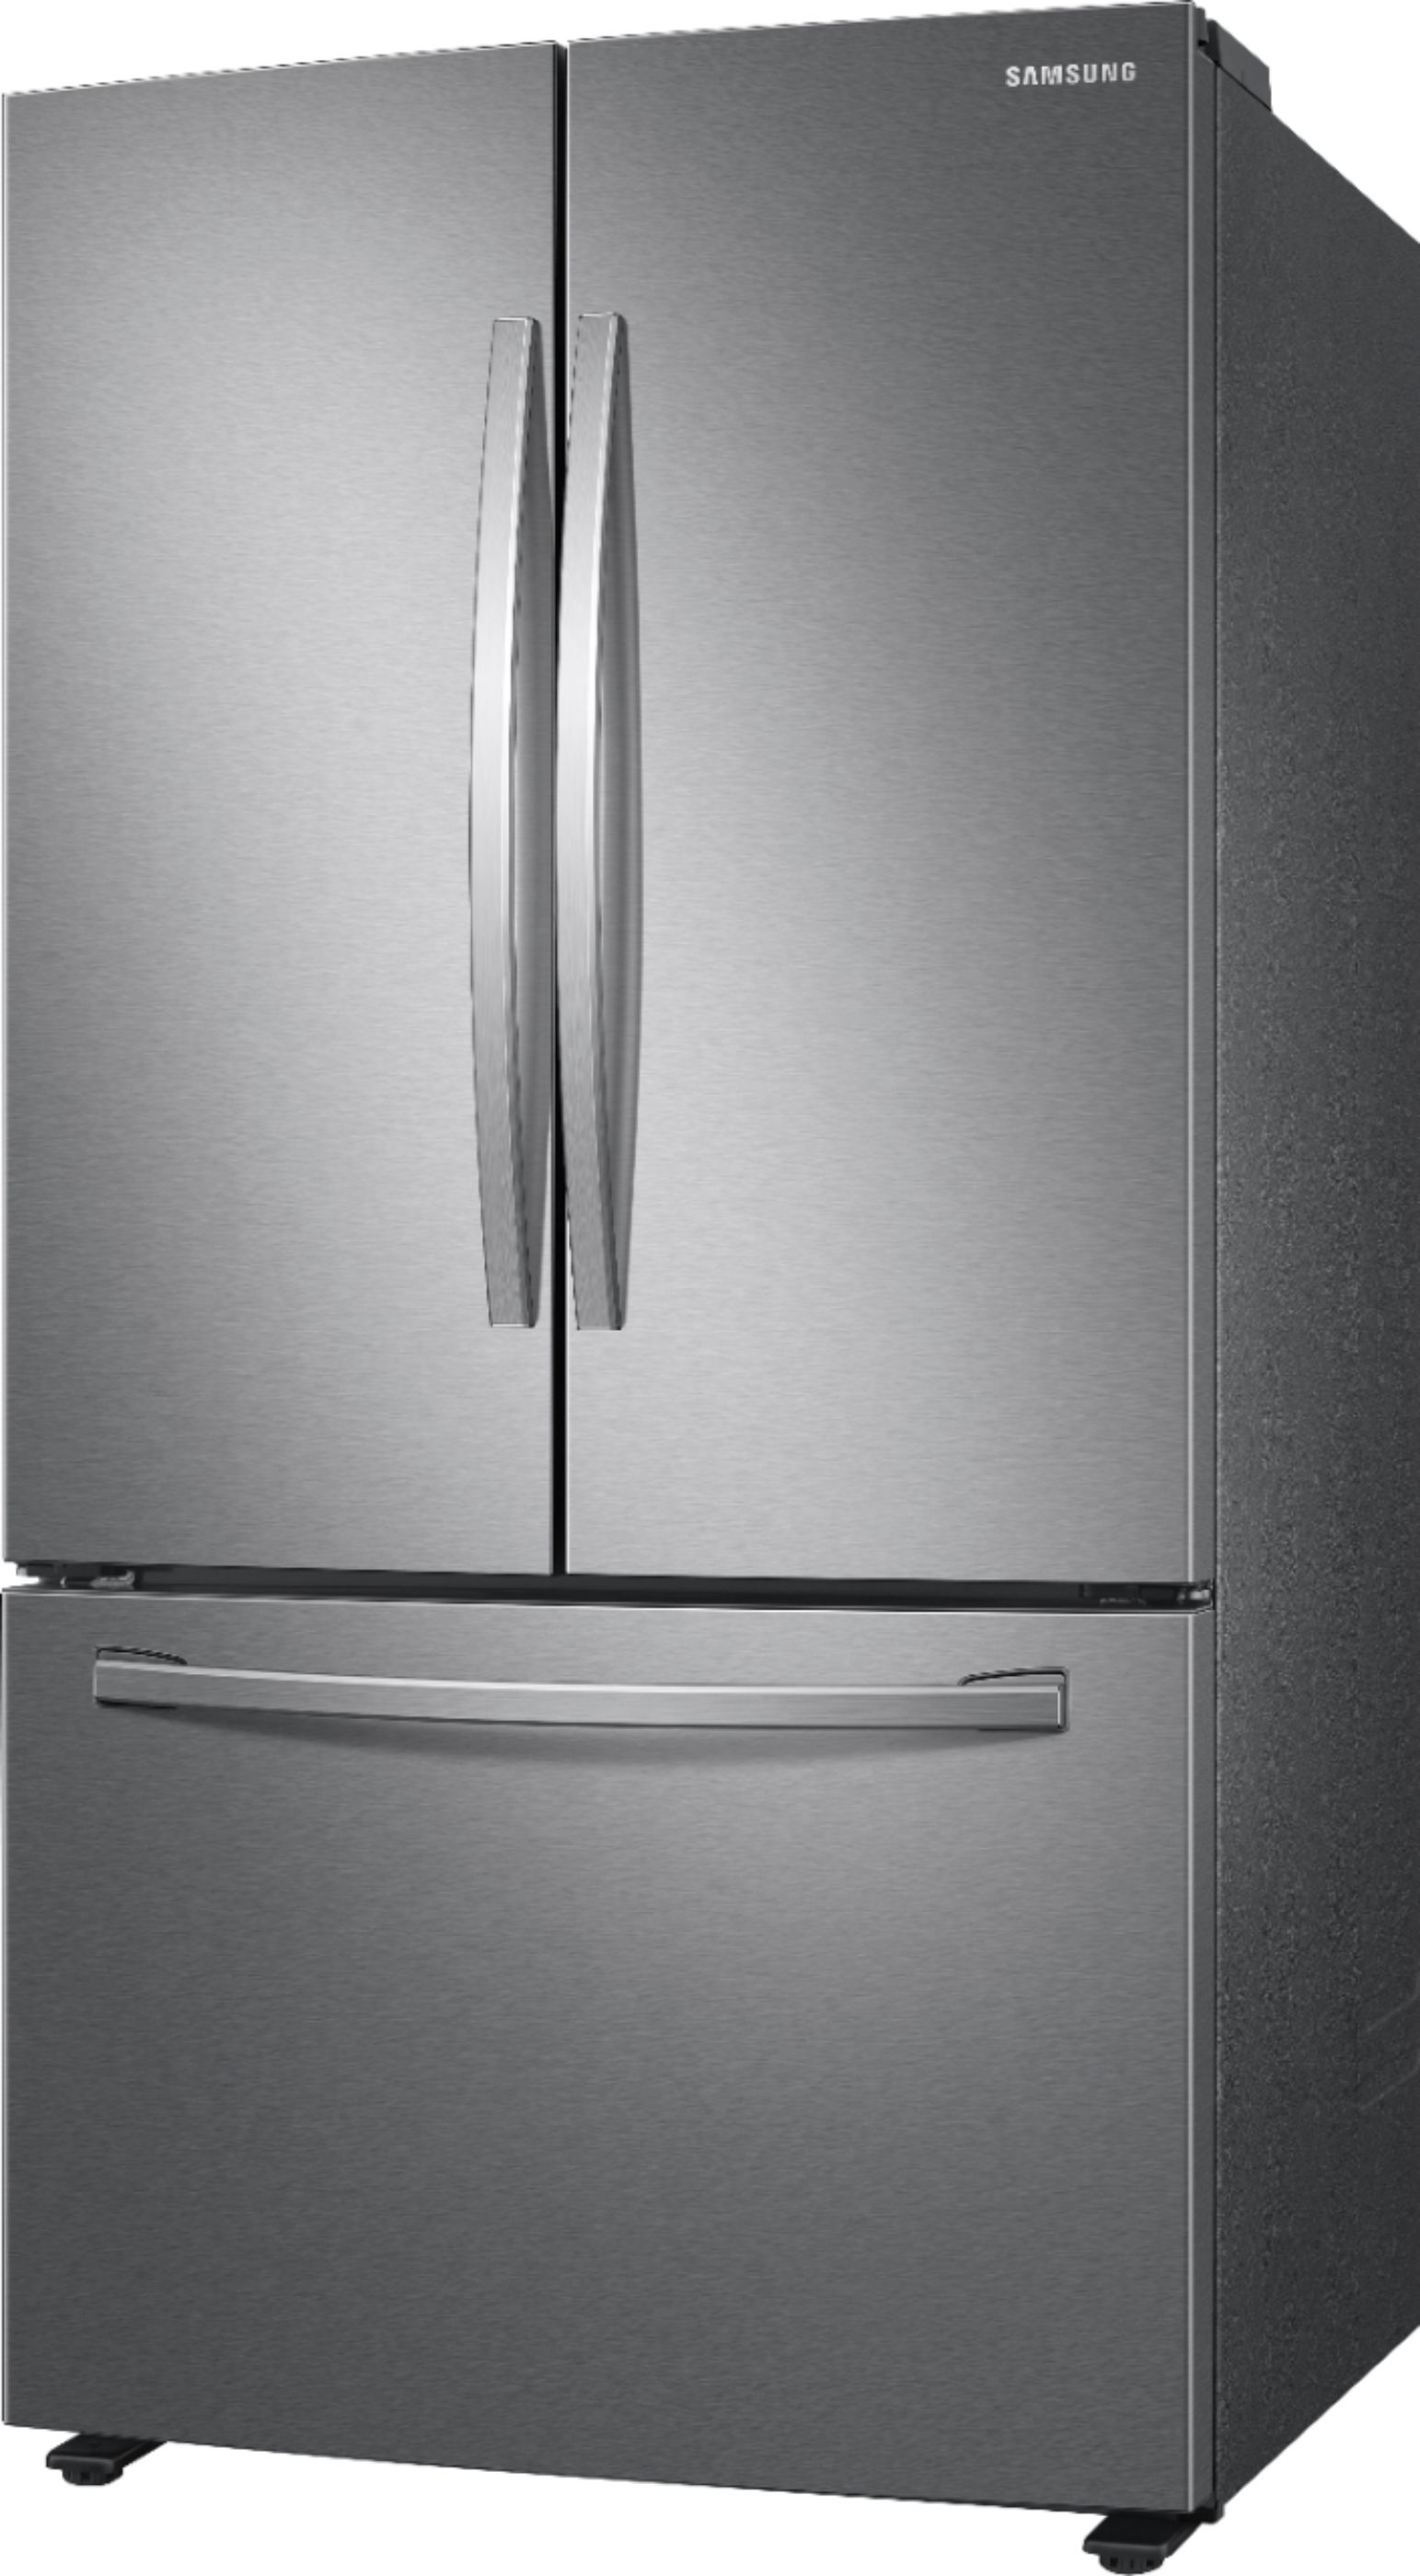 Samsung 28 cu. ft. 3-Door French Door Refrigerator with AutoFill